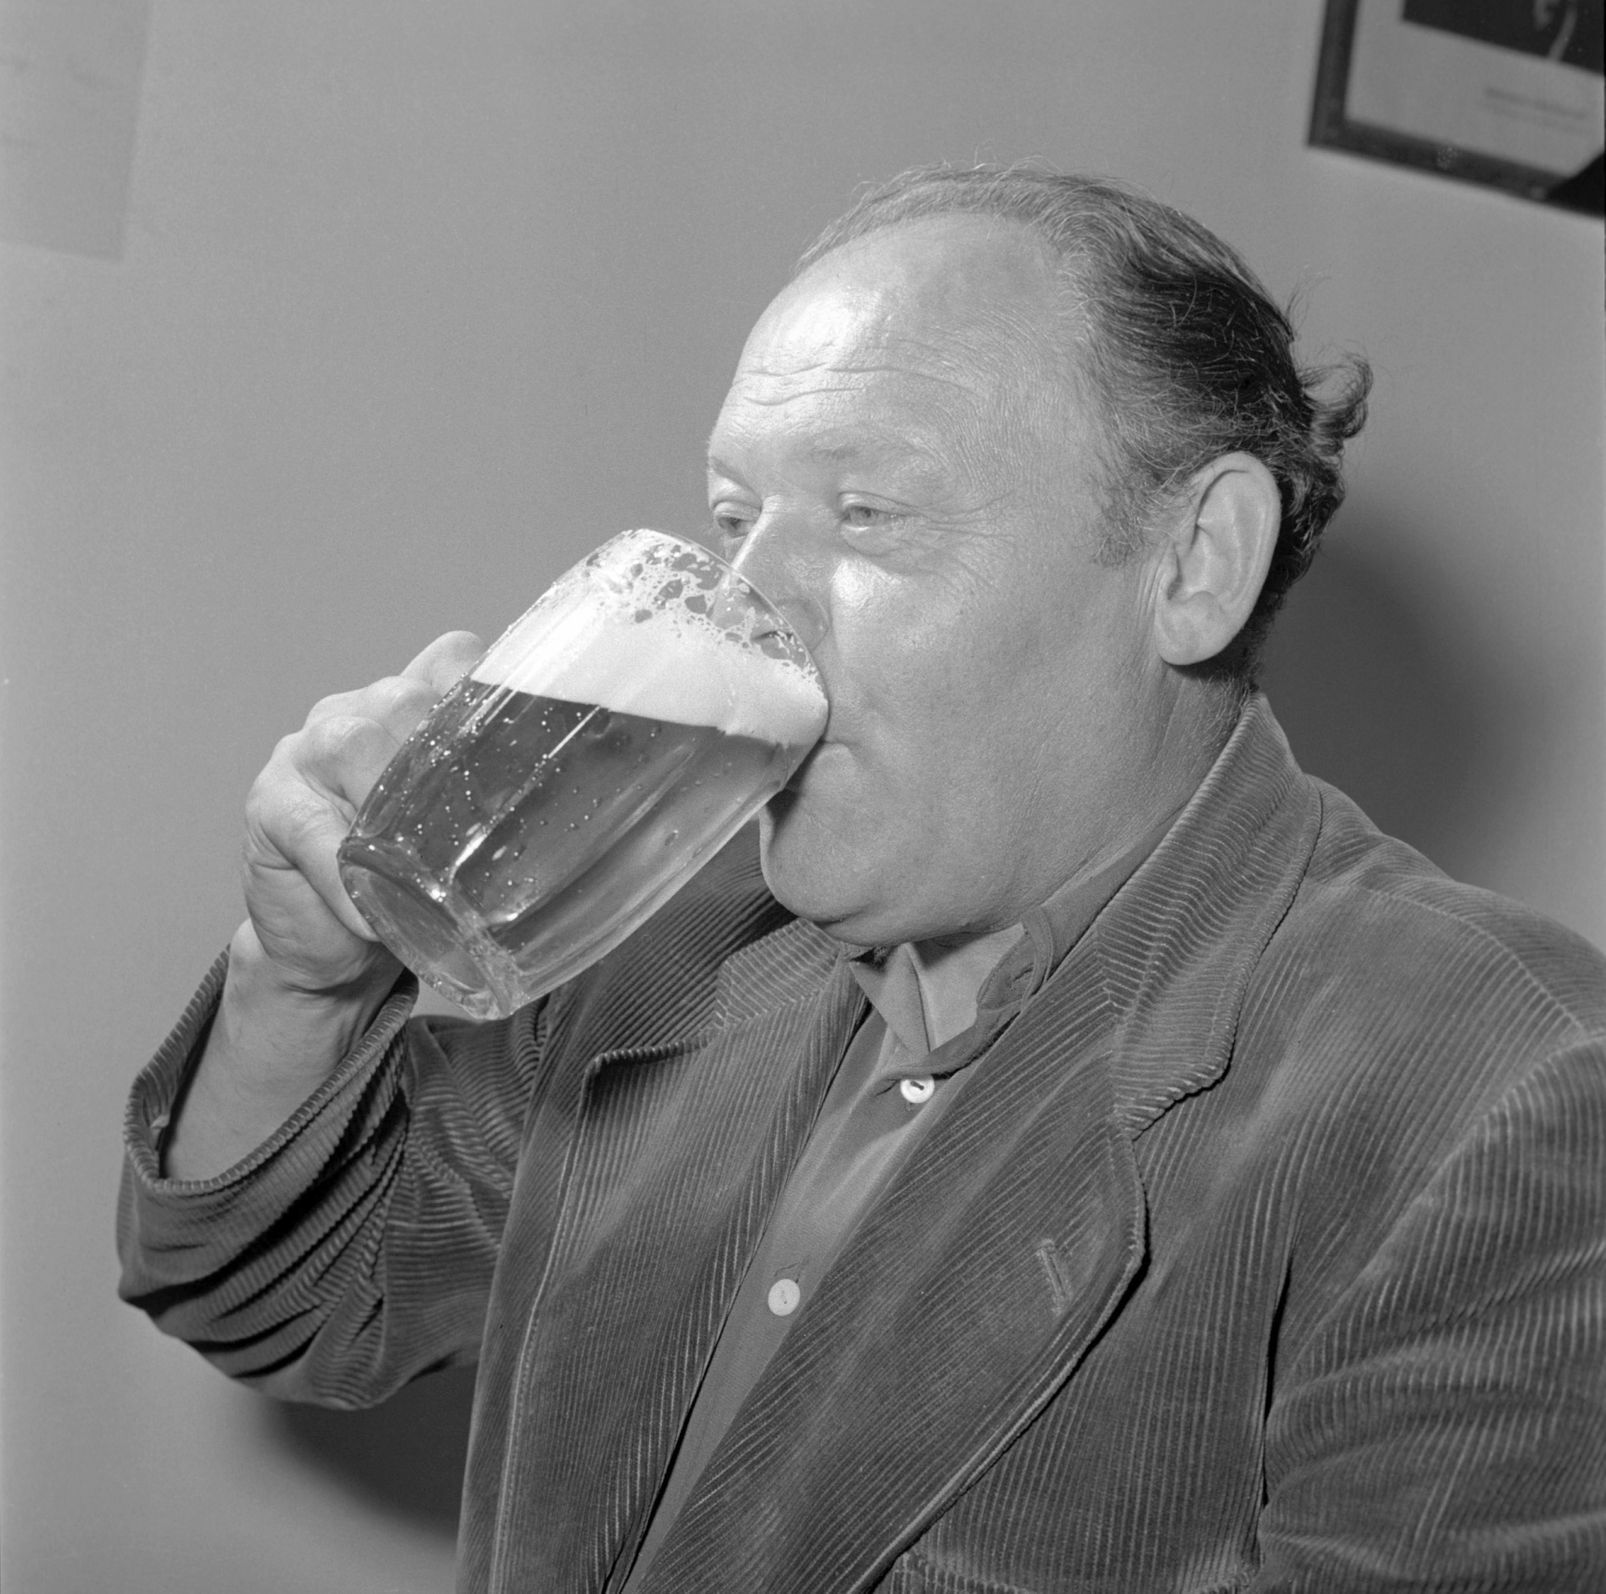 muž pije pivo Samson půllitr žízeň 1958